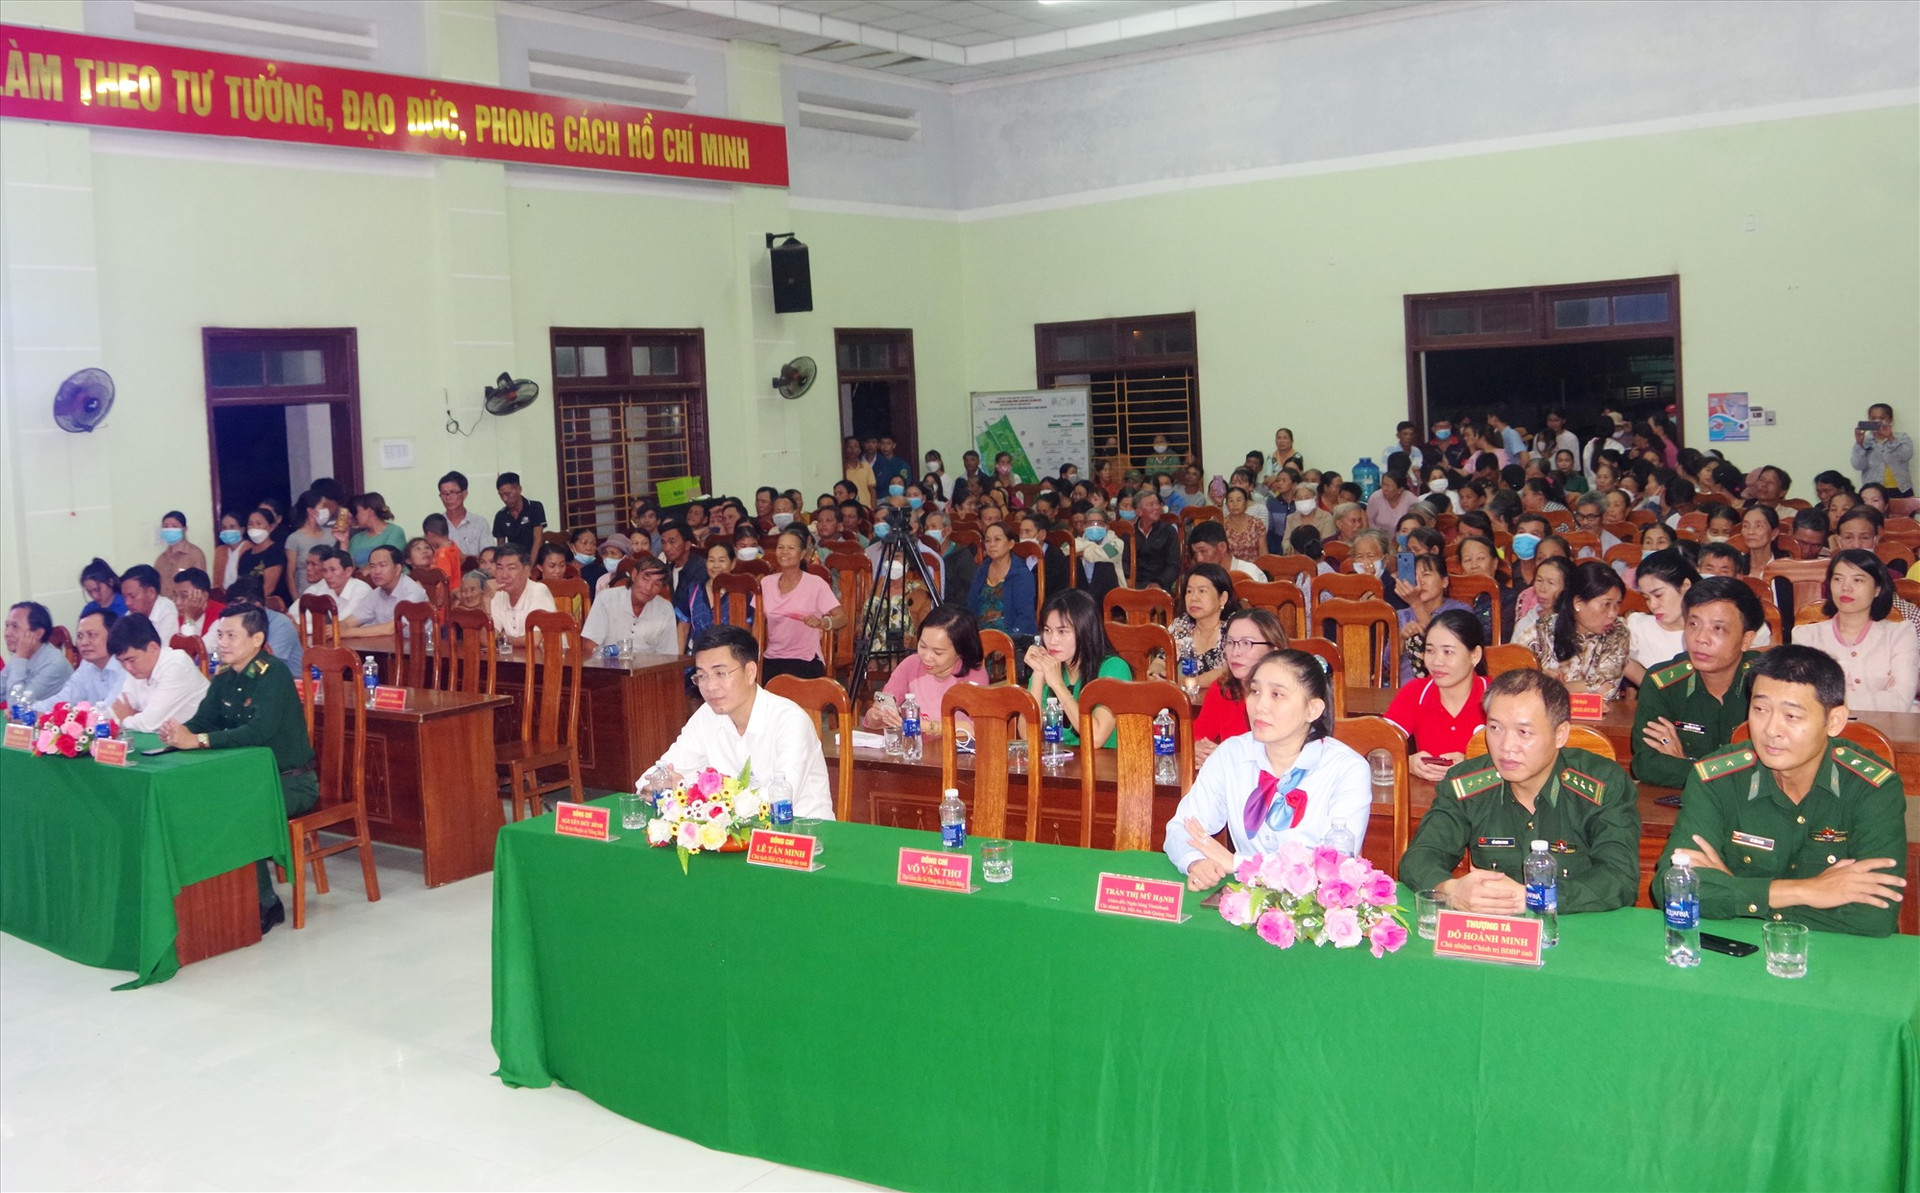 Đông đảo người dân các xã ven biển của huyện Thăng bình đến xem và cổ vũ chương trình.